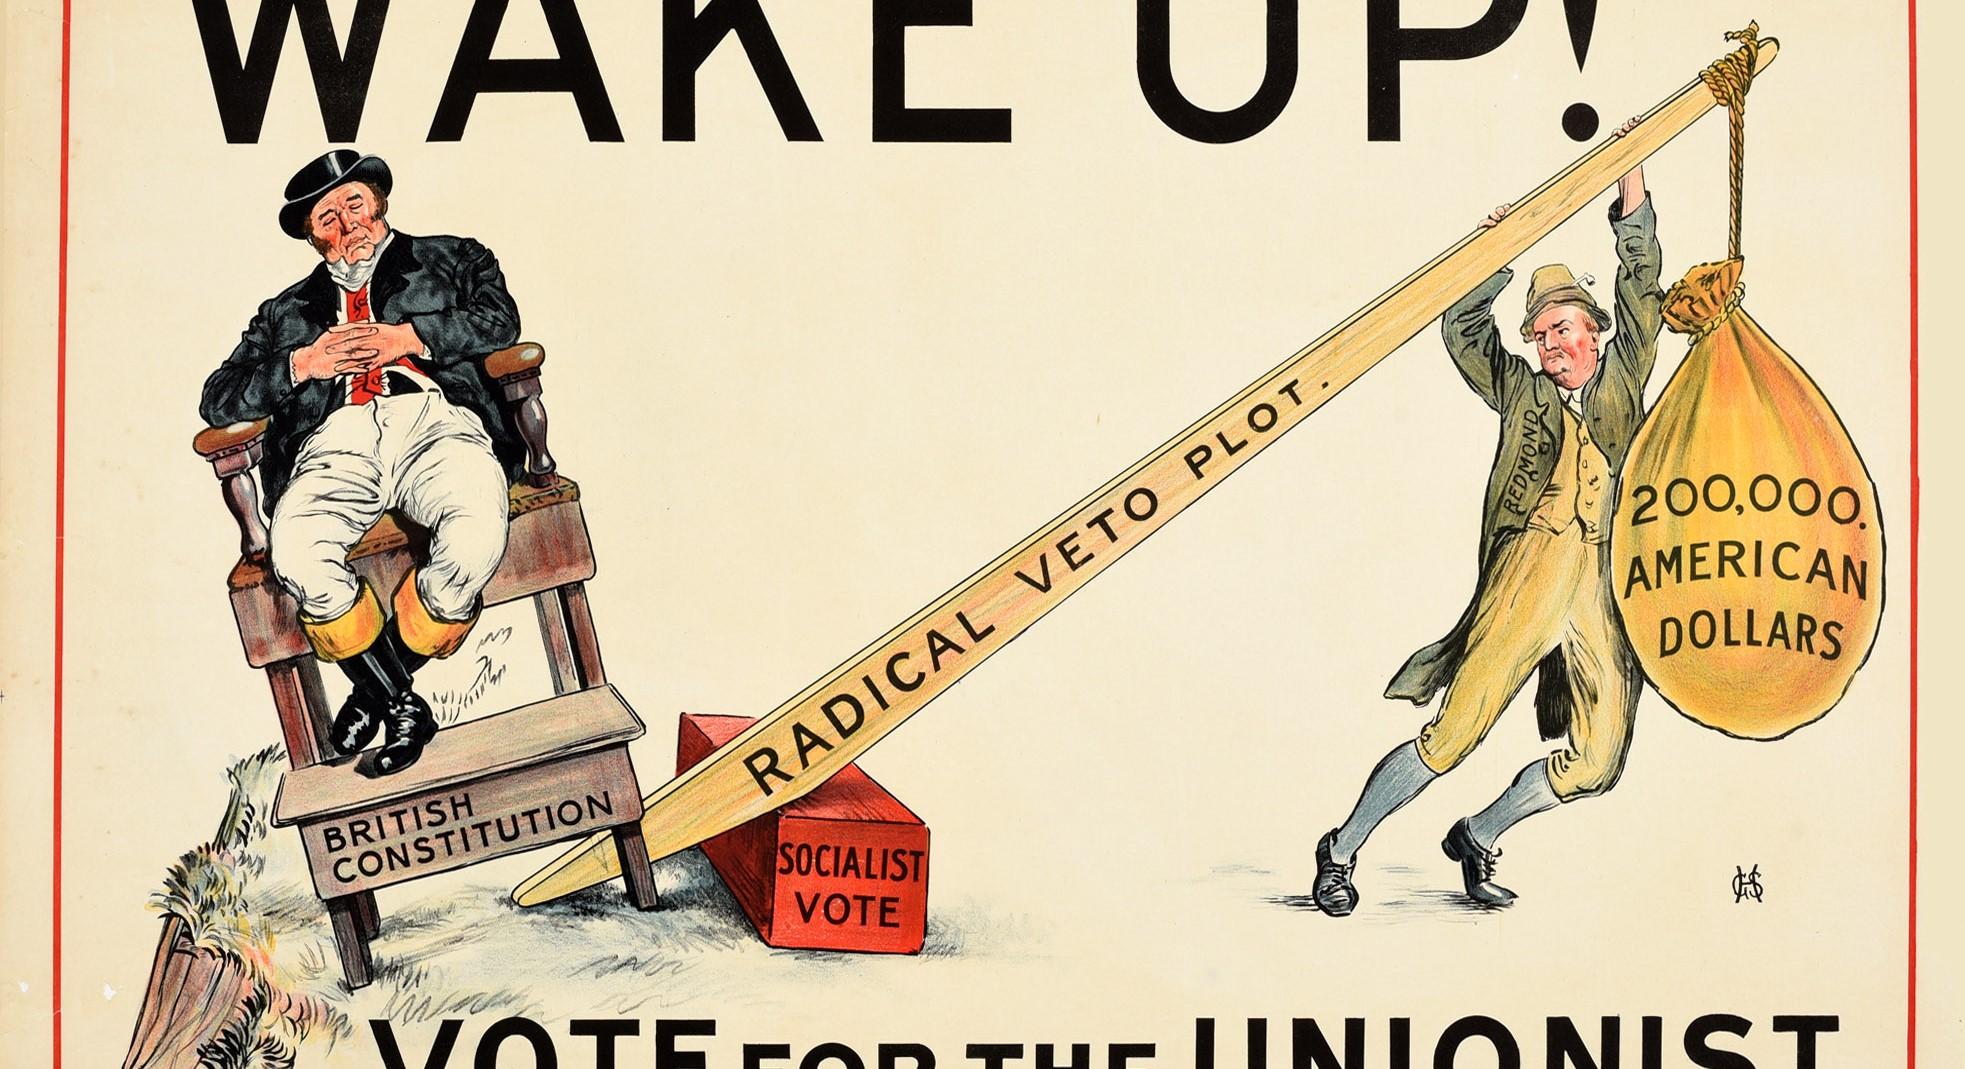 Original antikes politisches Wahlpropagandaposter - Wake Up! Vote for the Unionist and a Reformed Second Chamber - mit einer Illustration von John Bull, der eine Weste mit einer Union-Jack-Flagge trägt und entspannt auf einem Holzstuhl mit der